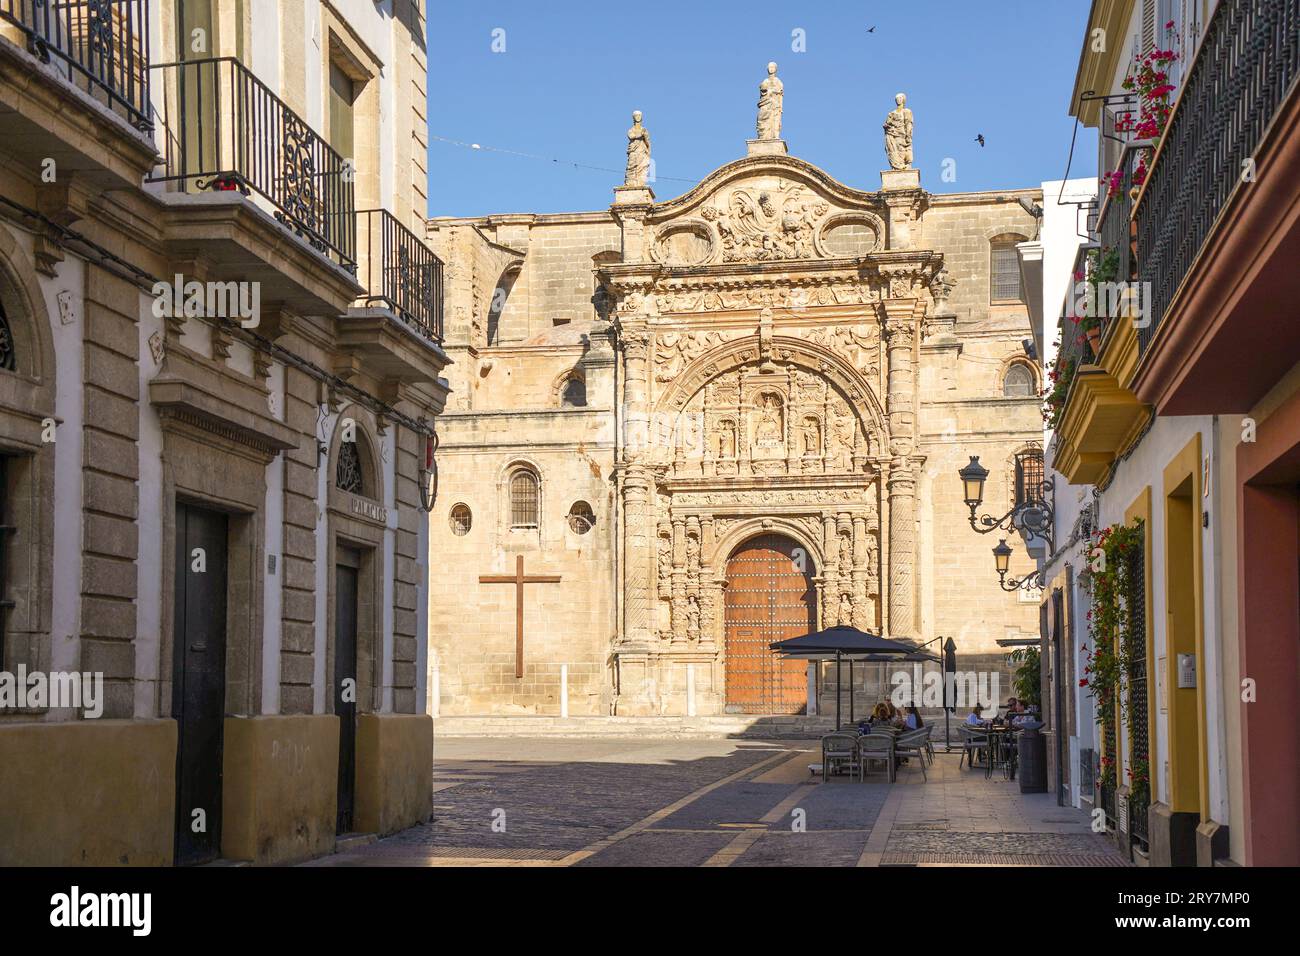 Puerto de Santa María Cadix. Église, église du prieuré, Iglesia Mayor prioral, province de Cadix, Espagne. Banque D'Images